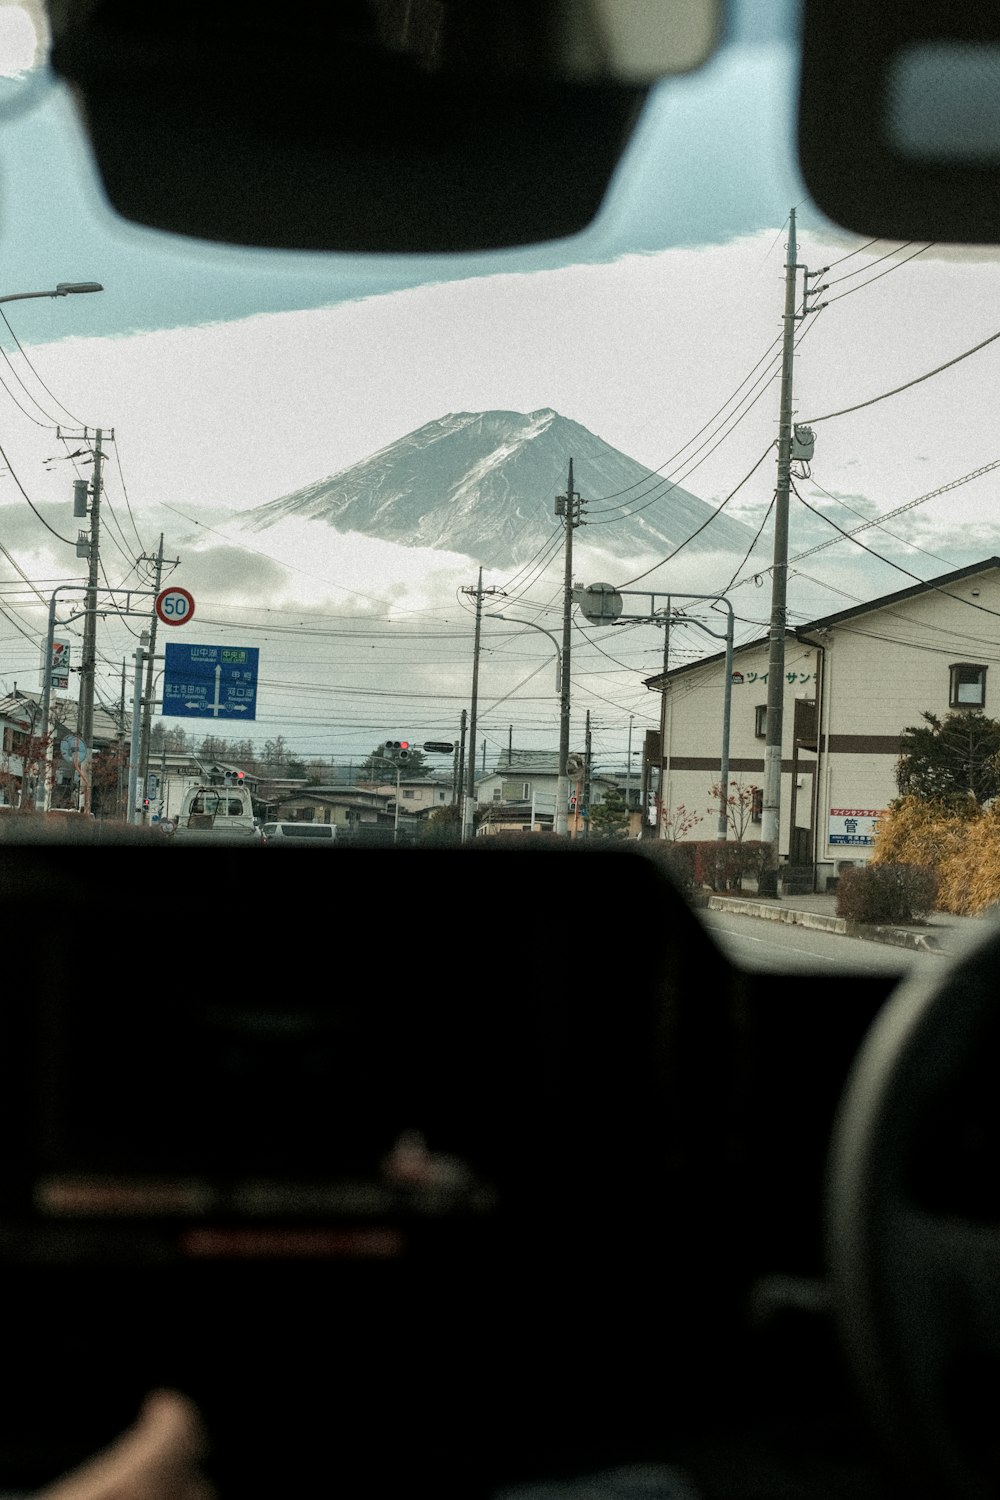 차 안에서 바라본 산의 모습